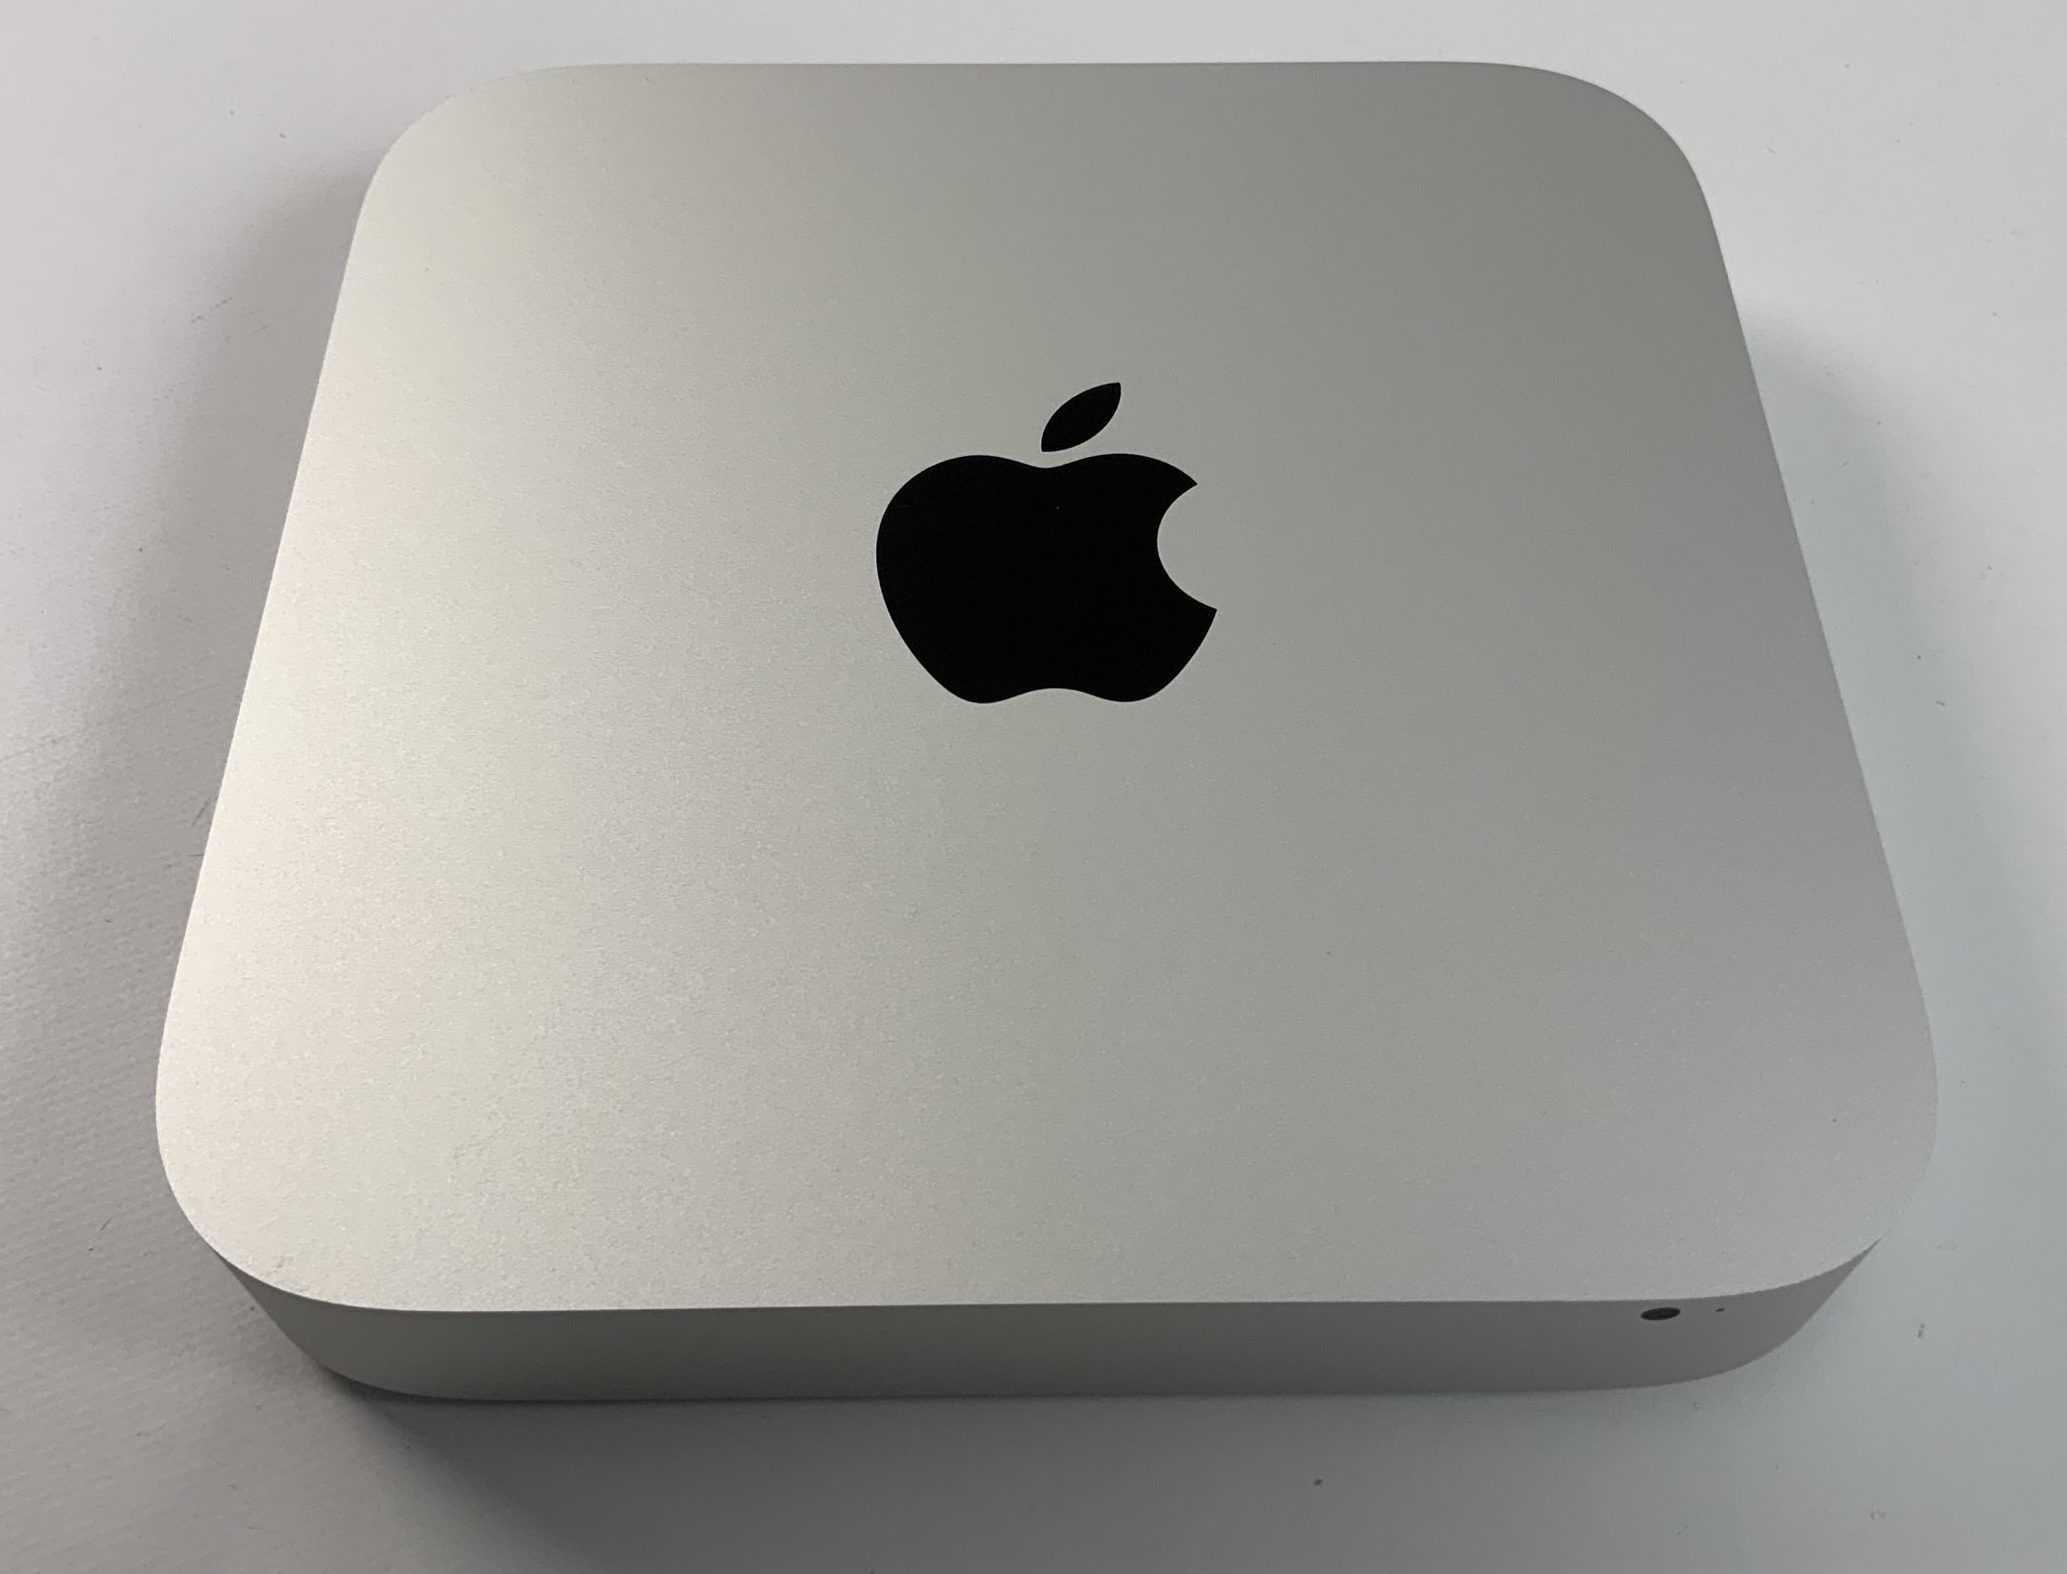 Mac Mini Late 2014 (Intel Core i5 1.4 GHz 4 GB RAM 500 GB HDD), Intel Core i5 1.4 GHz, 4 GB RAM, 500 GB HDD, immagine 1